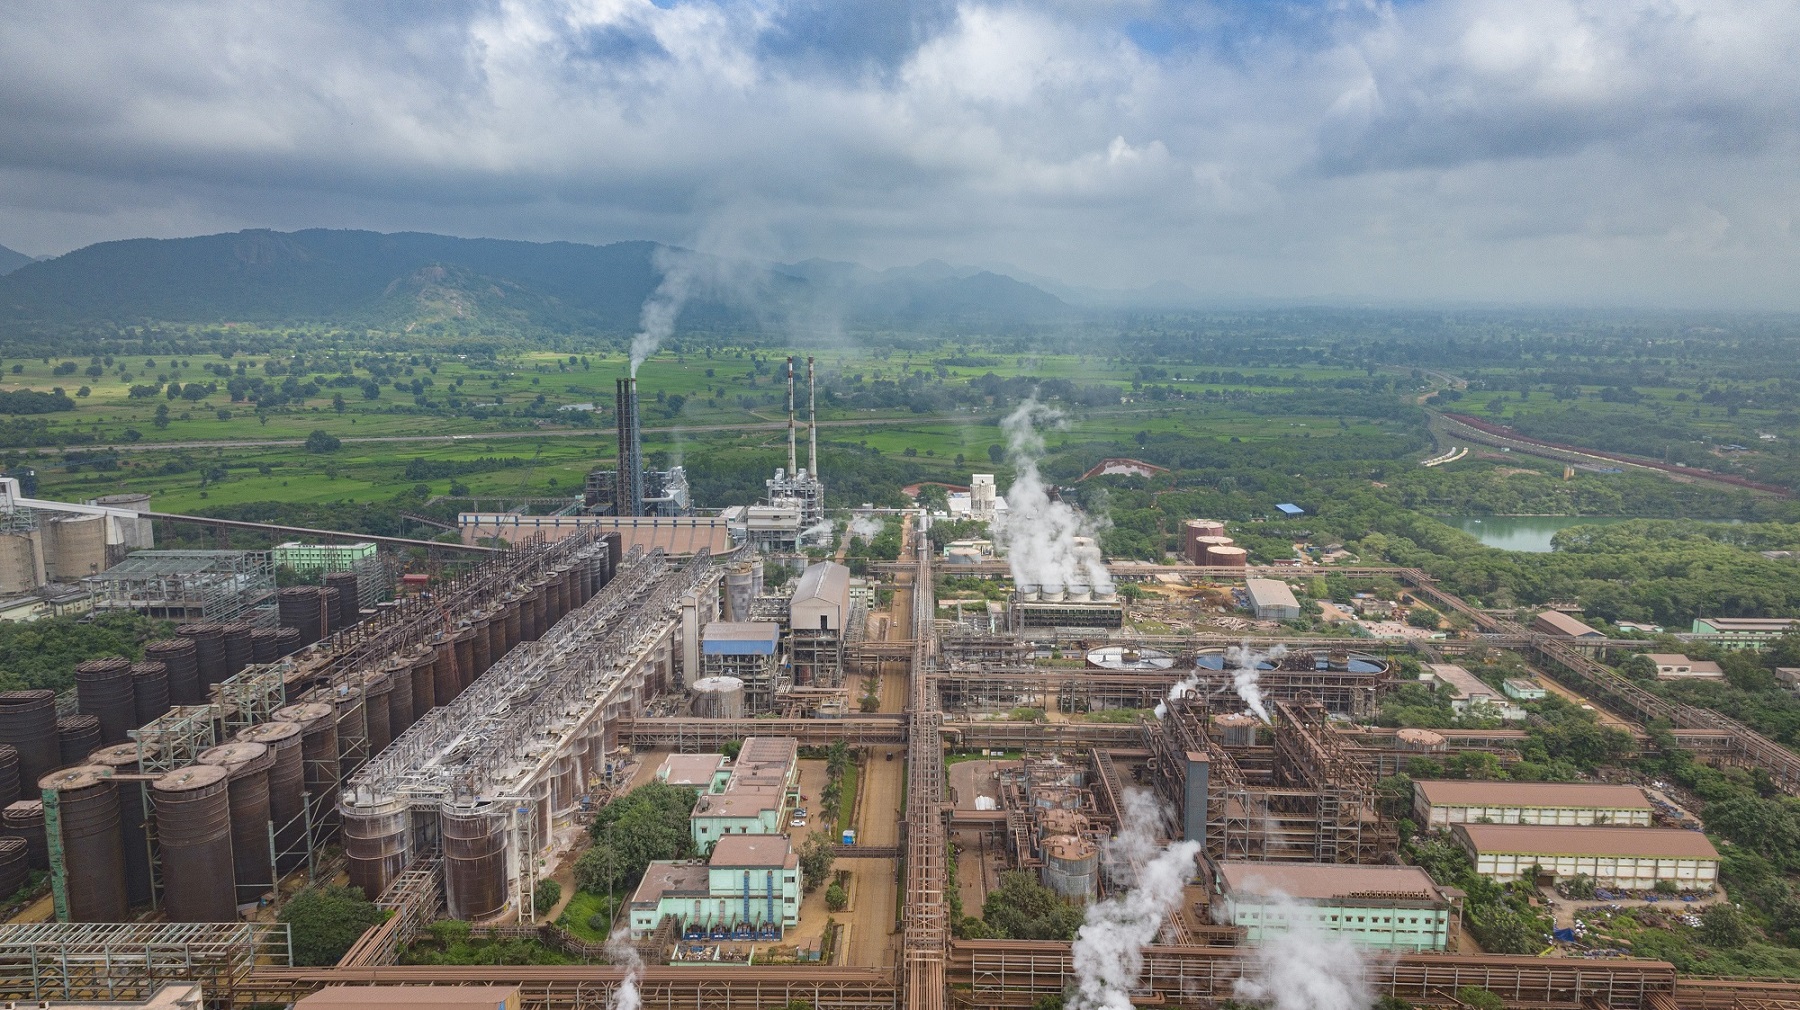 Vedanta’s Alumina Refinery at Lanjigarh, Odisha